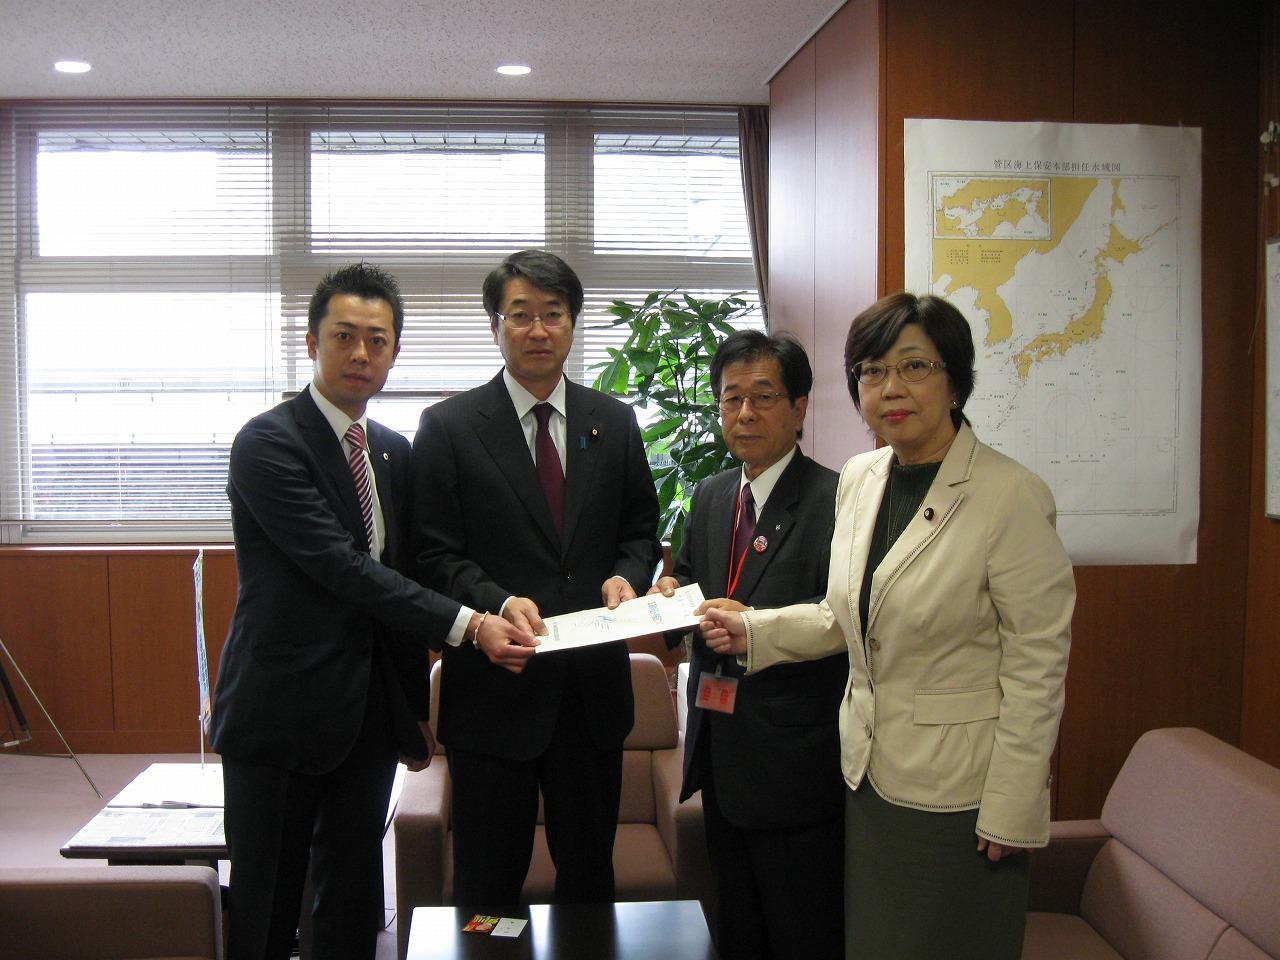 左から、谷川とむ（自民党大阪第19区支部長）、坂井政務官、田代町長、太田参議院議員